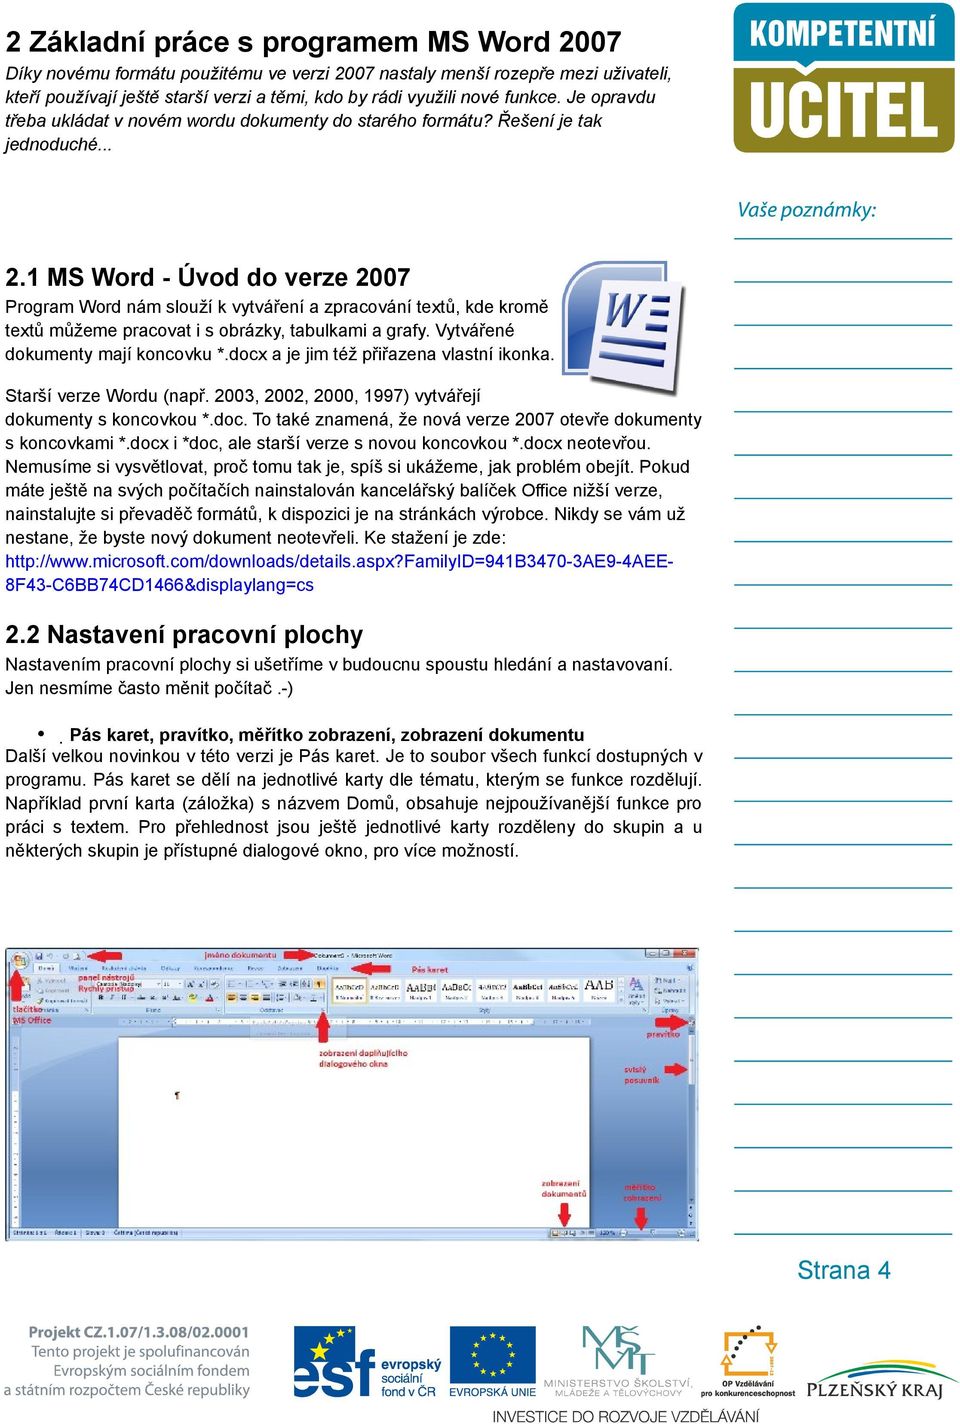 1 MS Word - Úvod do verze 2007 Program Word nám slouží k vytváření a zpracování textů, kde kromě textů můžeme pracovat i s obrázky, tabulkami a grafy. Vytvářené dokumenty mají koncovku *.